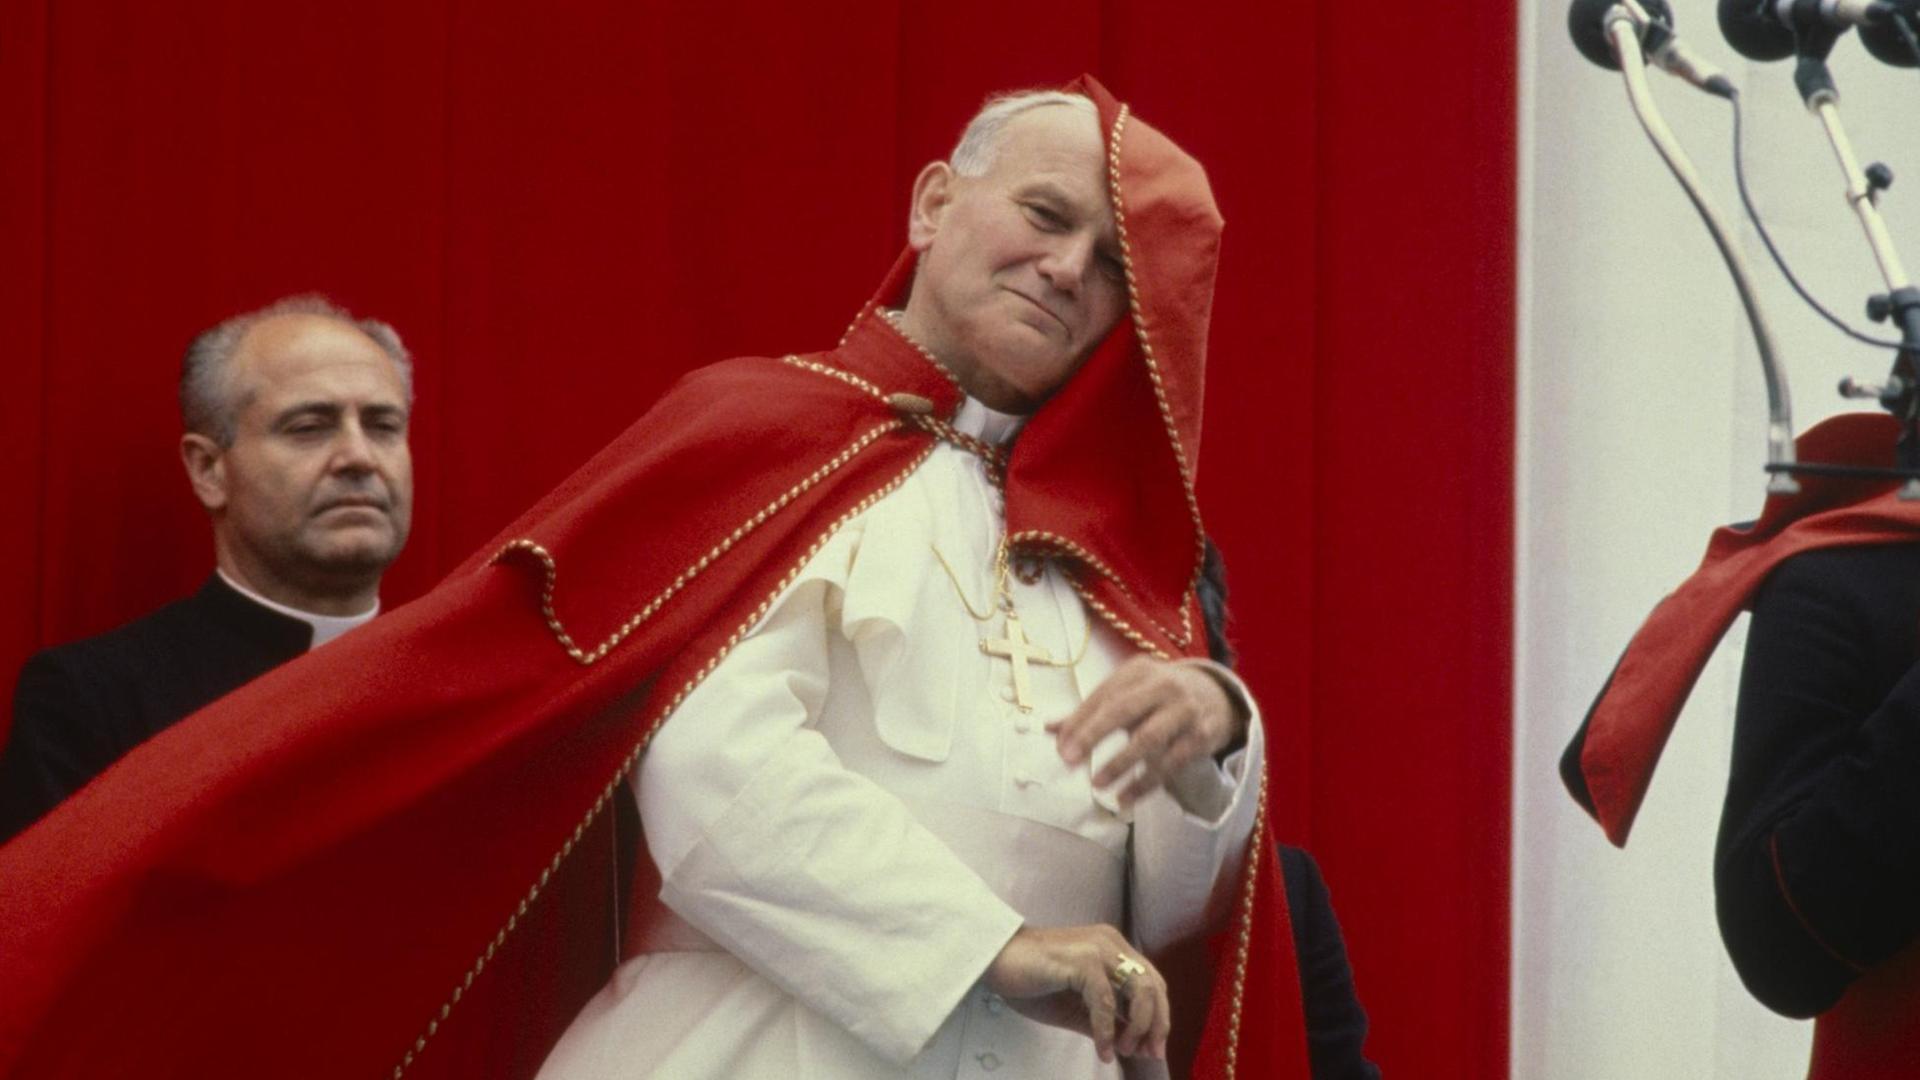 Johannes Paul II. mit wehendem roten Umhang im päpstlichen Ornat.